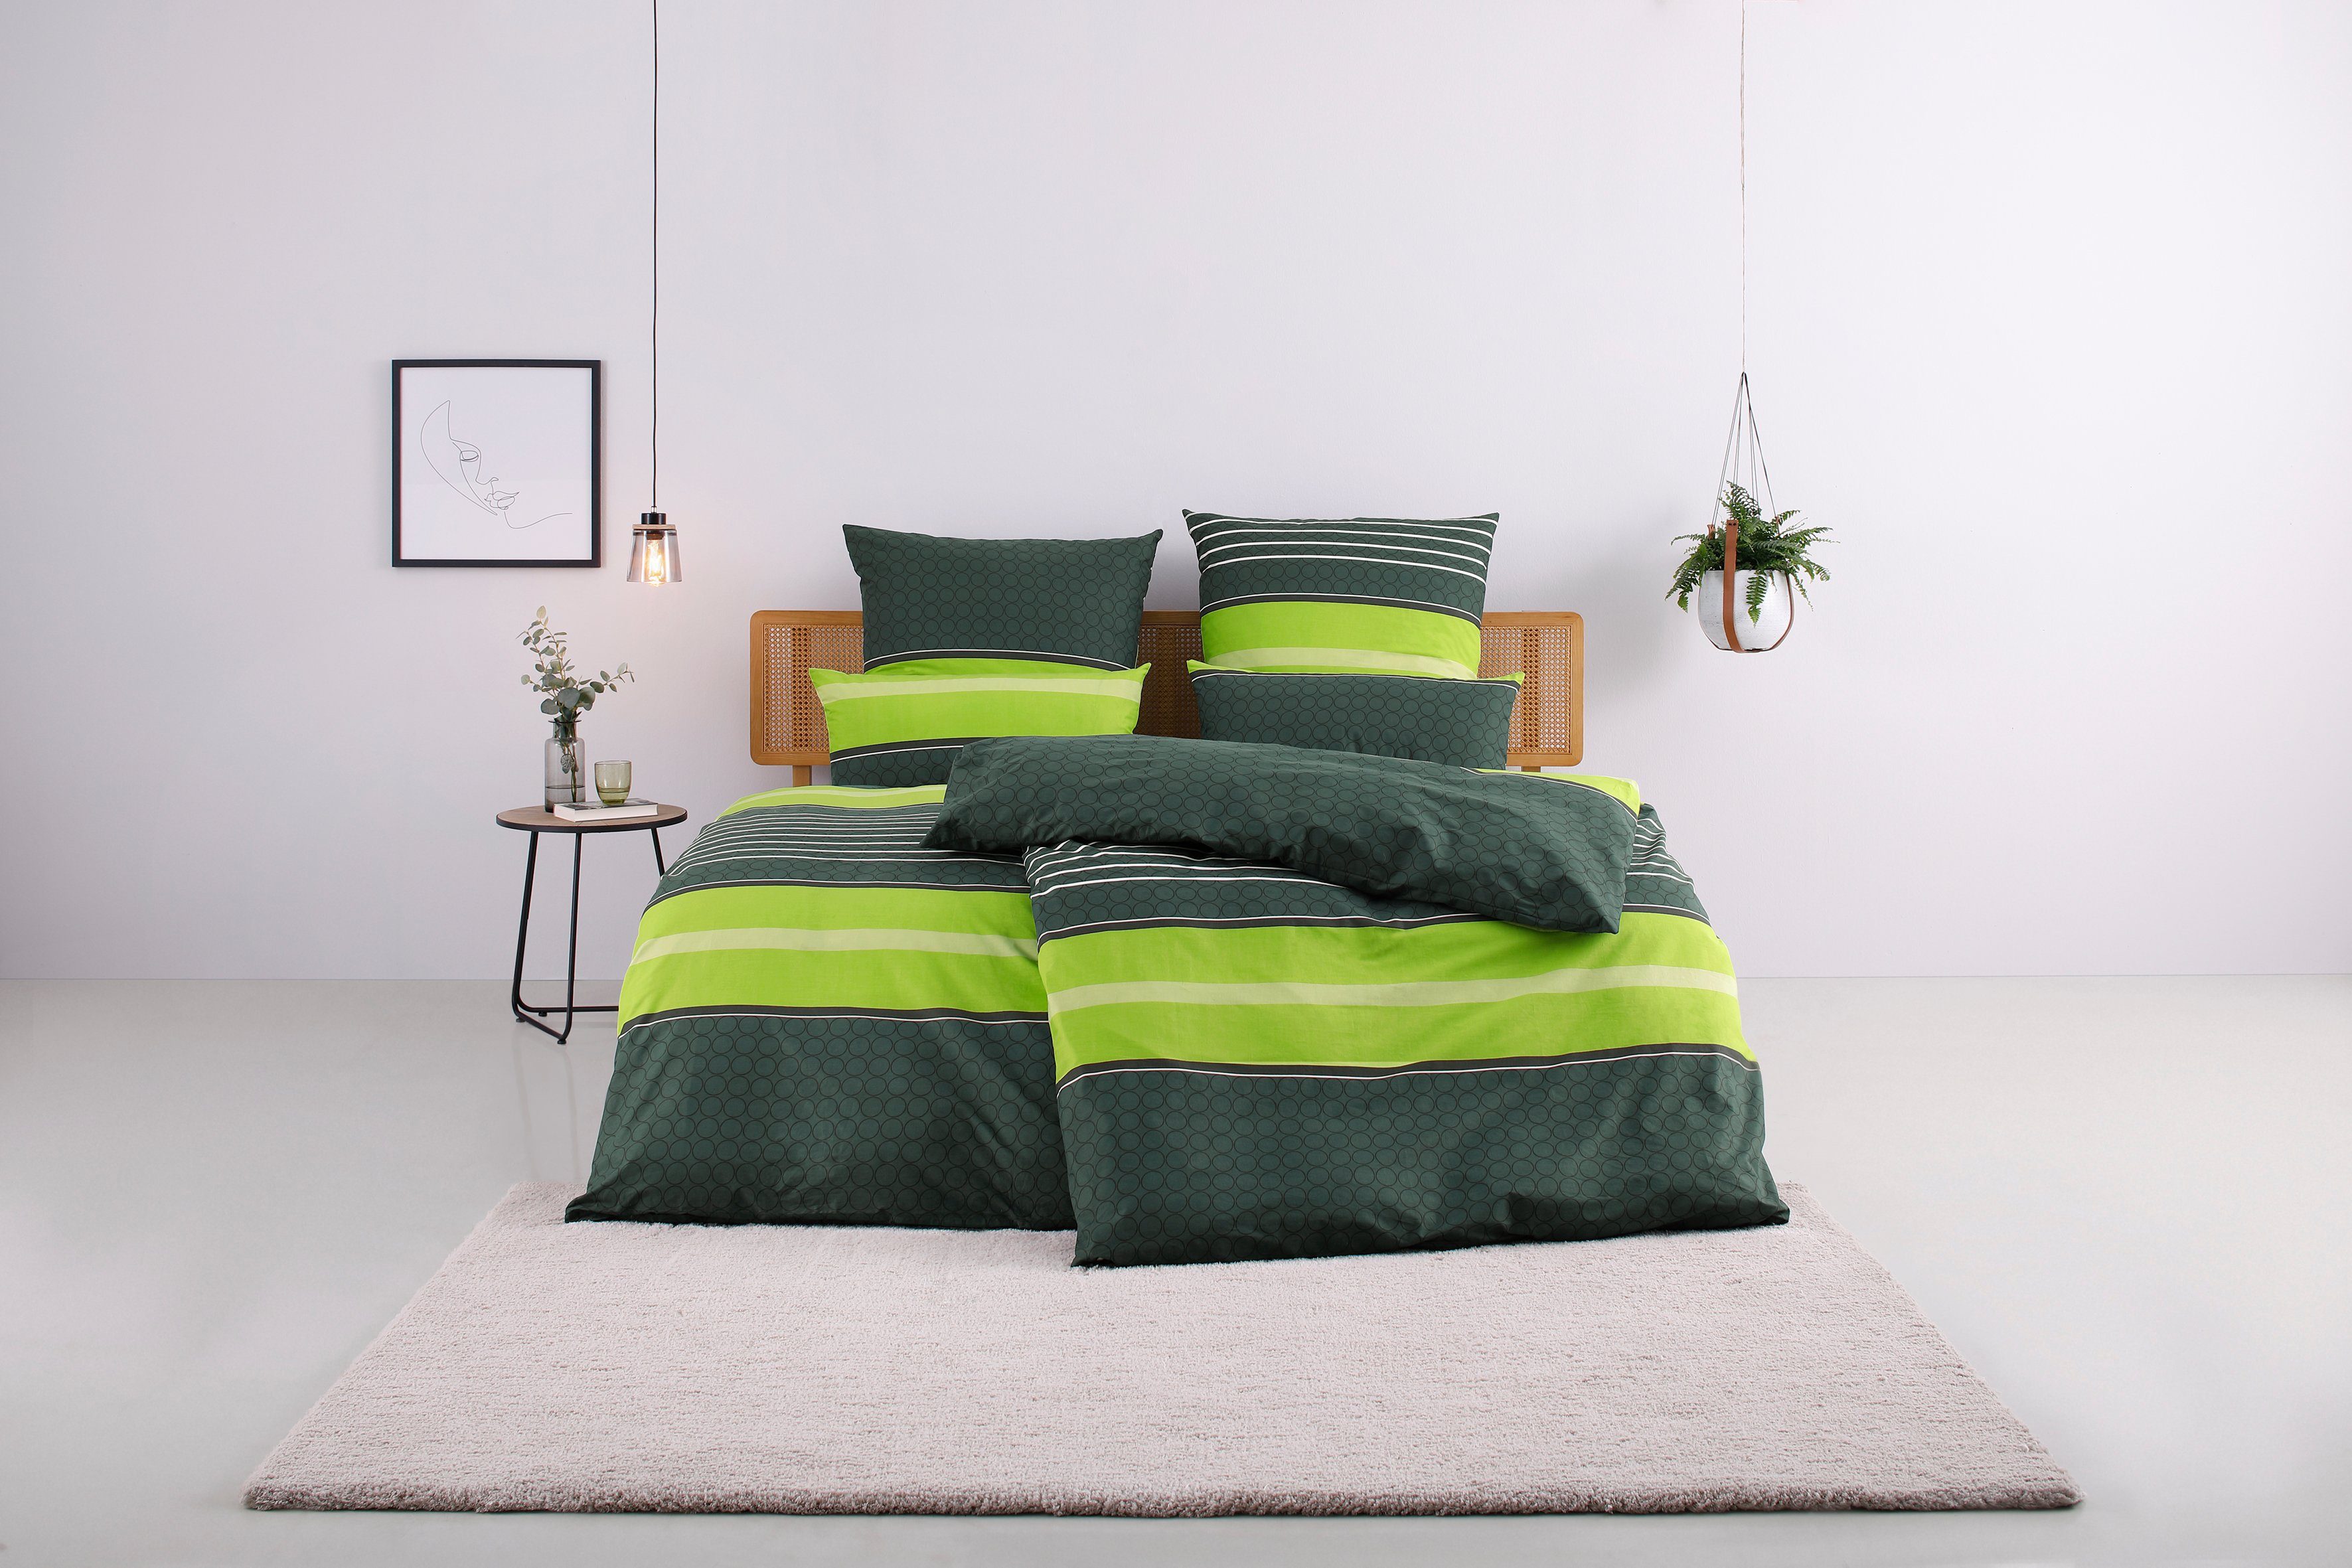 Bettwäsche Circle in Gr. 135x200 oder 155x220 cm, my home, Linon, 2 teilig,  Bettwäsche aus Baumwolle mit Streifen-Design, moderne Bettwäsche | Bettwäsche-Sets